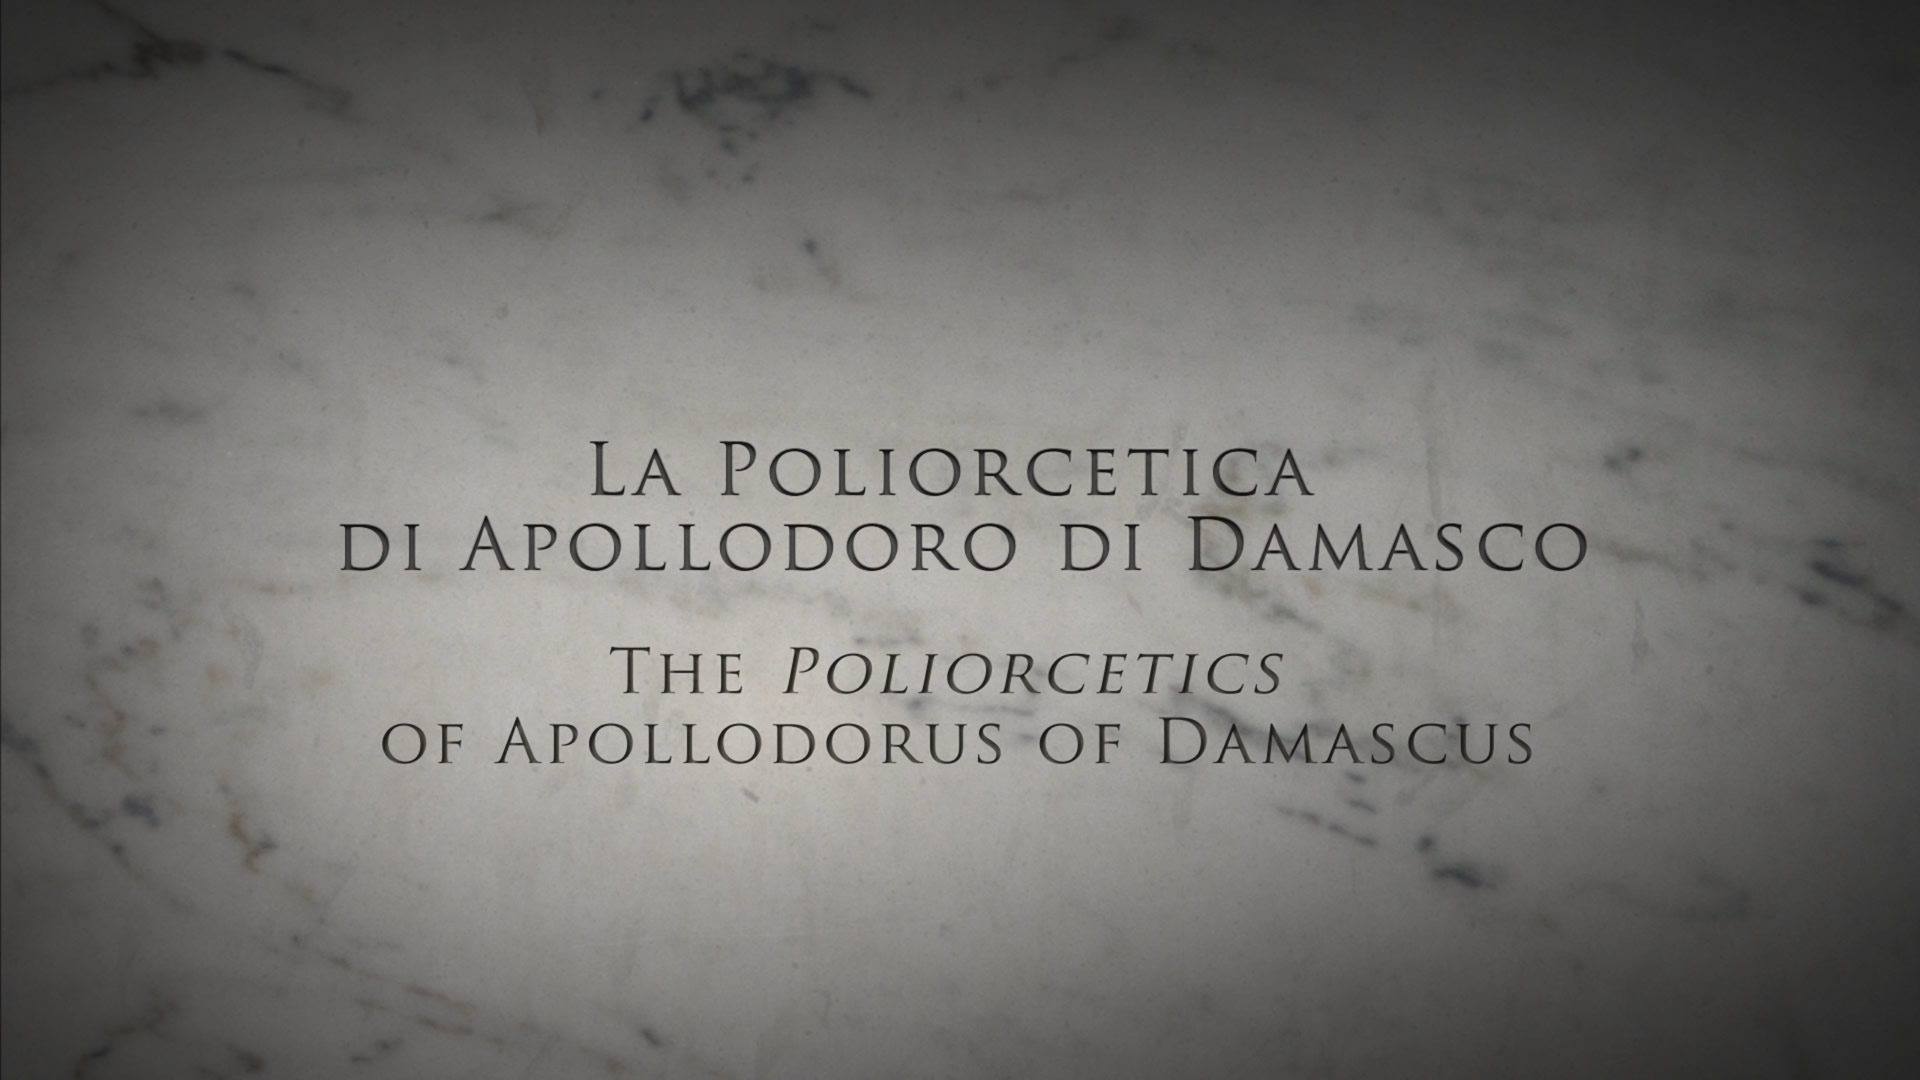 La poliorcetica di Apollodoro di Damasco